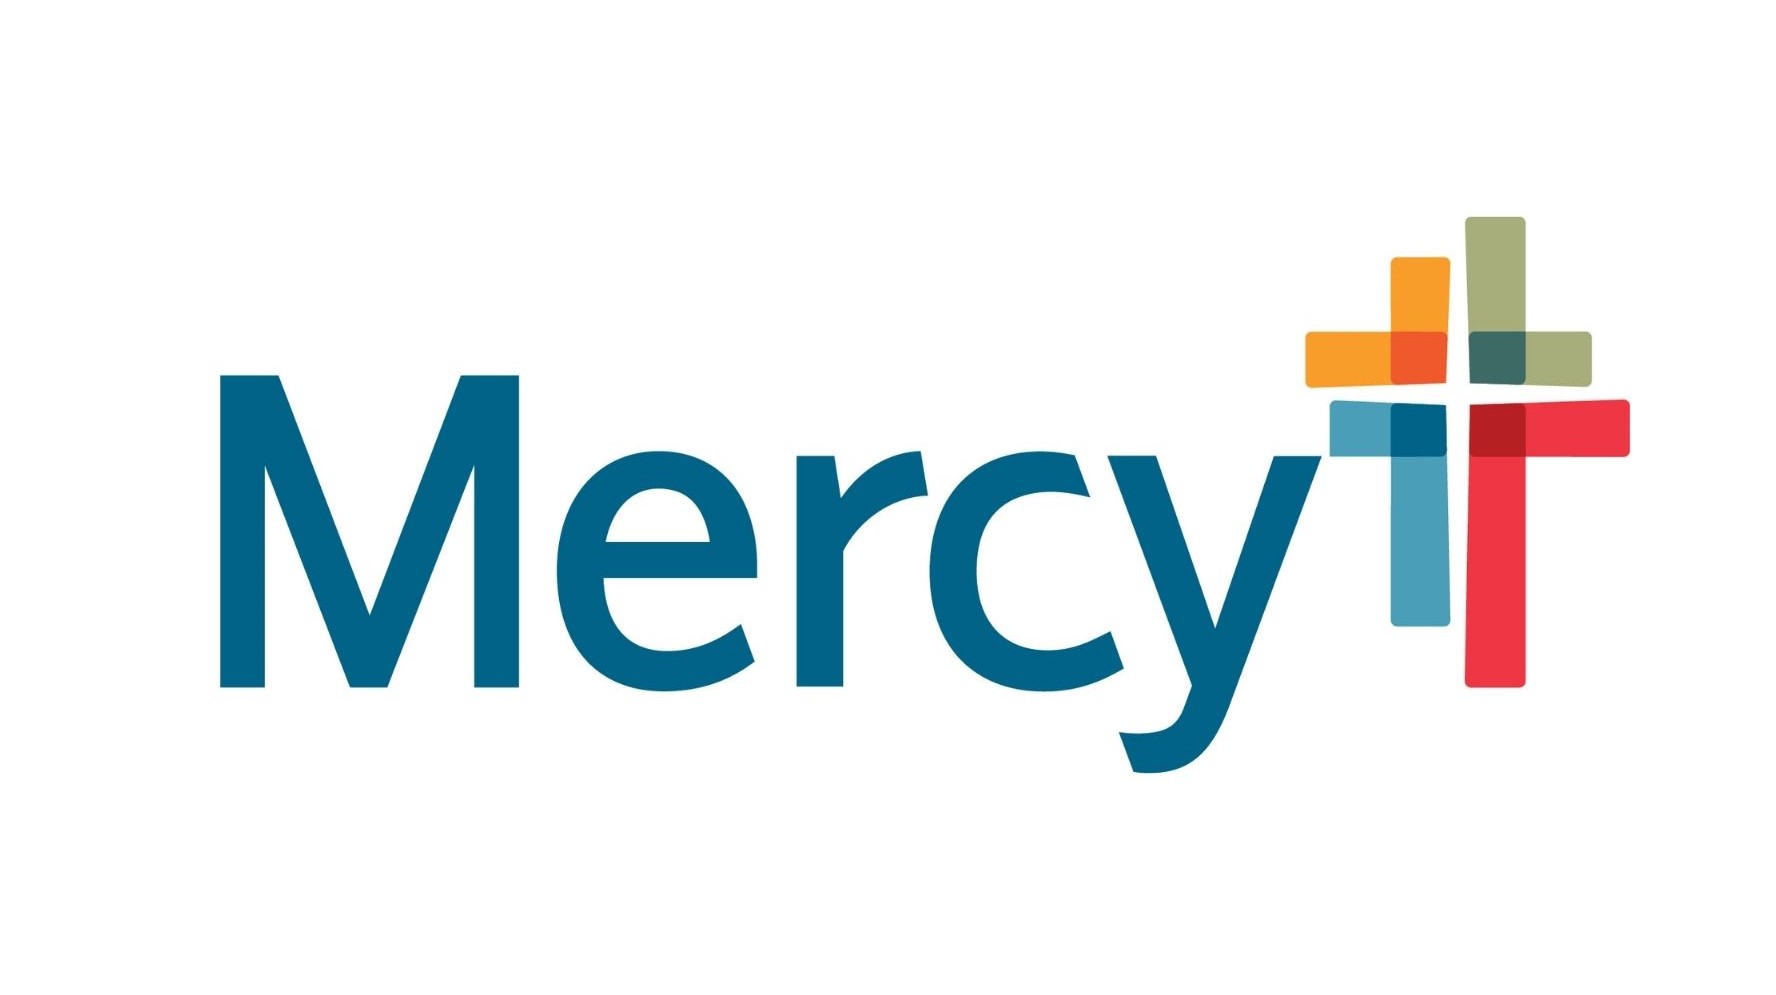 3. Mercy (Platinum)